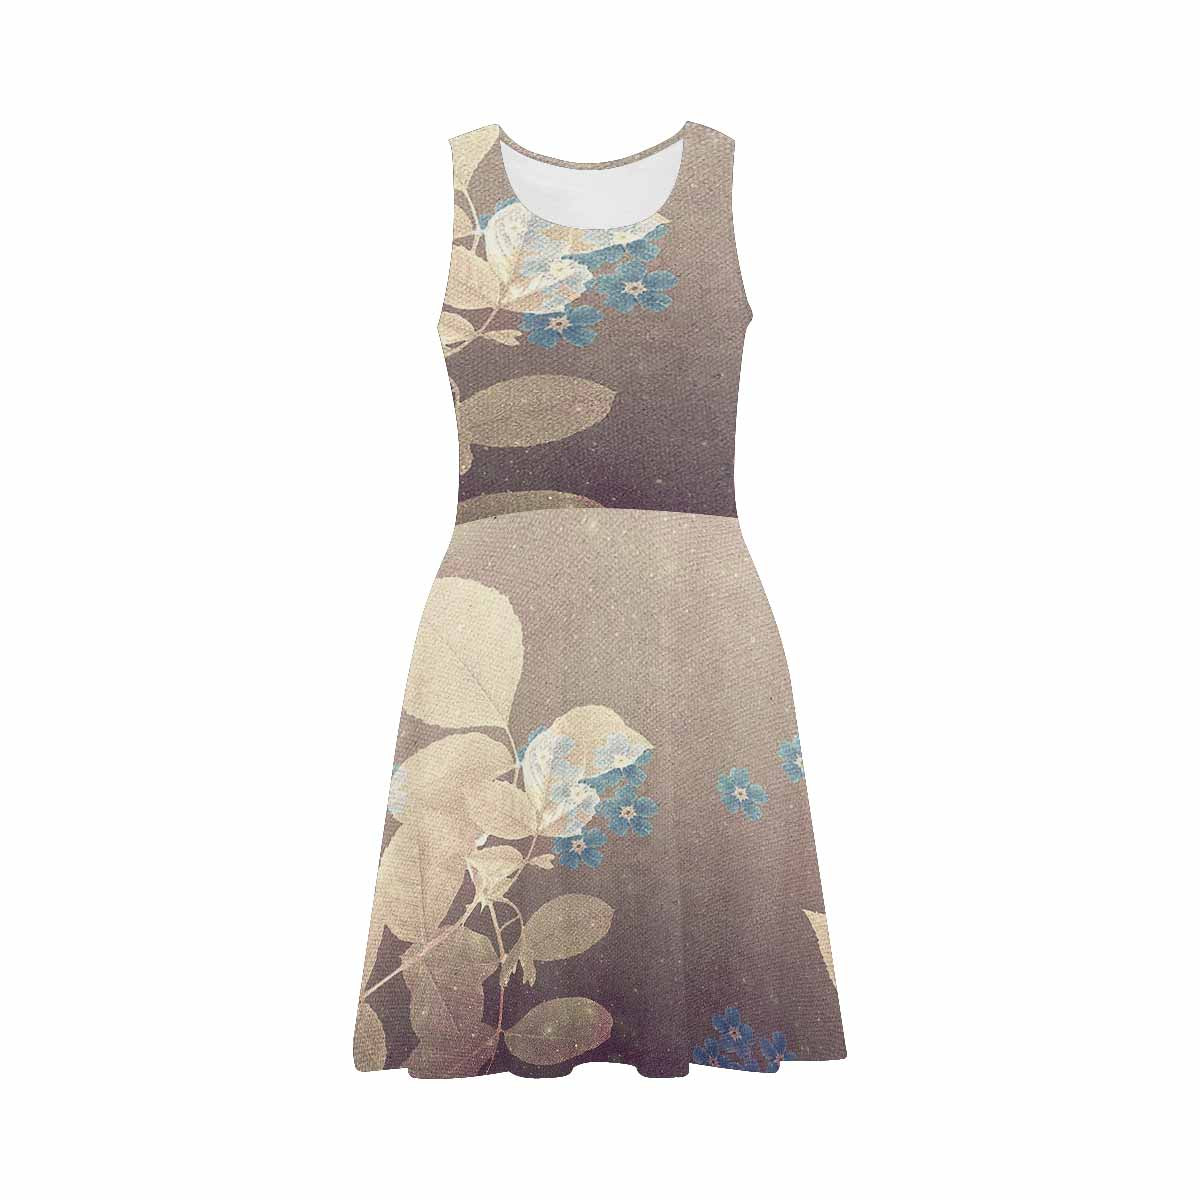 Antique General summer dress, MODEL 09534, design 48